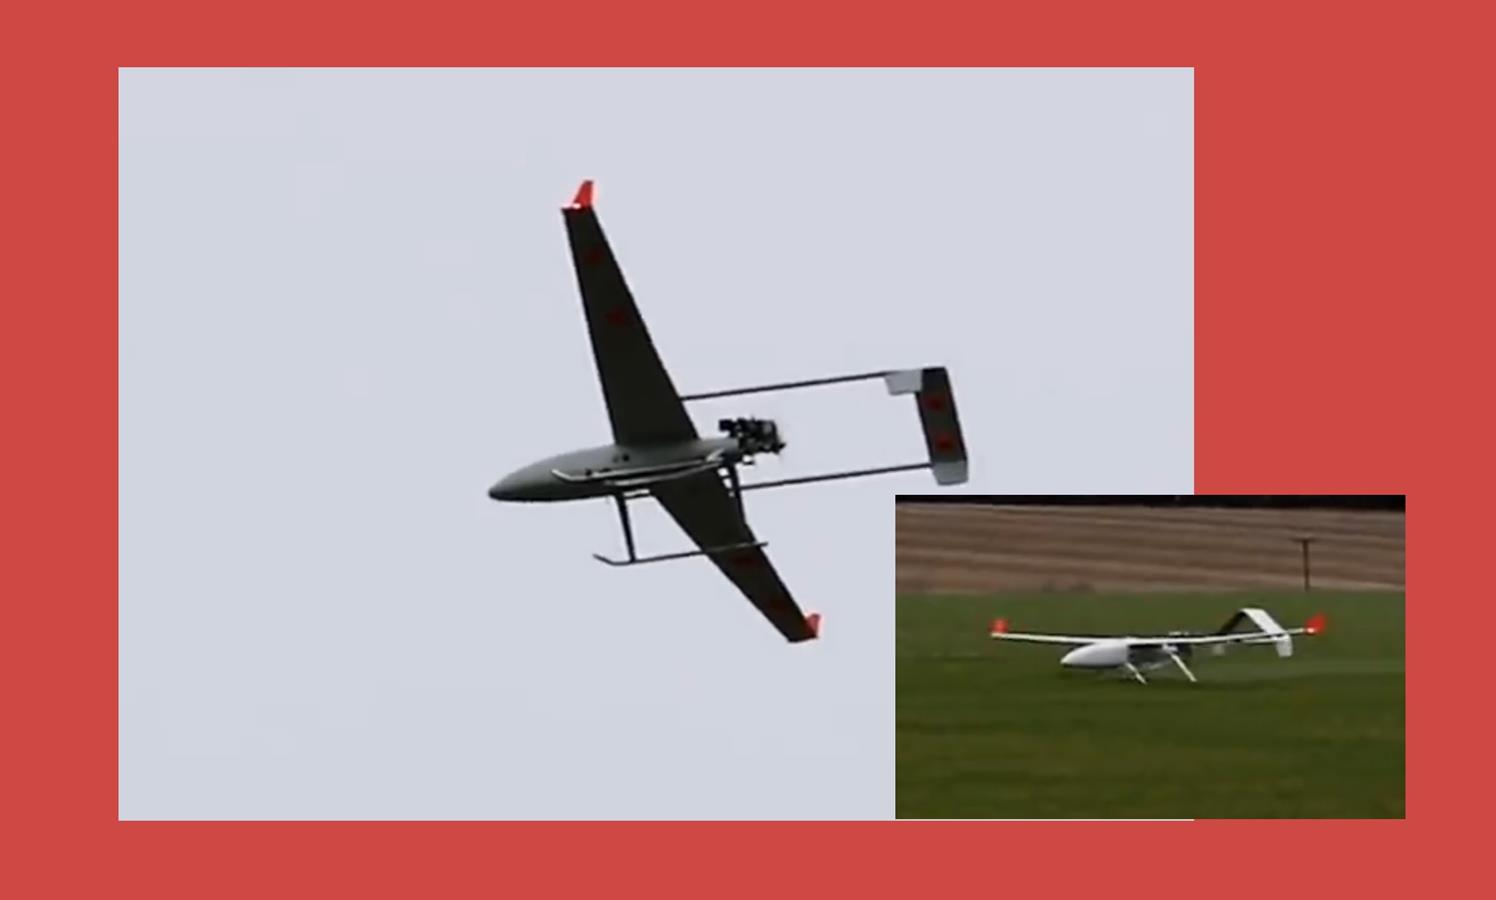 Pierwszy dron zasilany syntetycznym paliwem przetestowany. Lotnictwo brytyjskie wspomogli naukowcy z USA